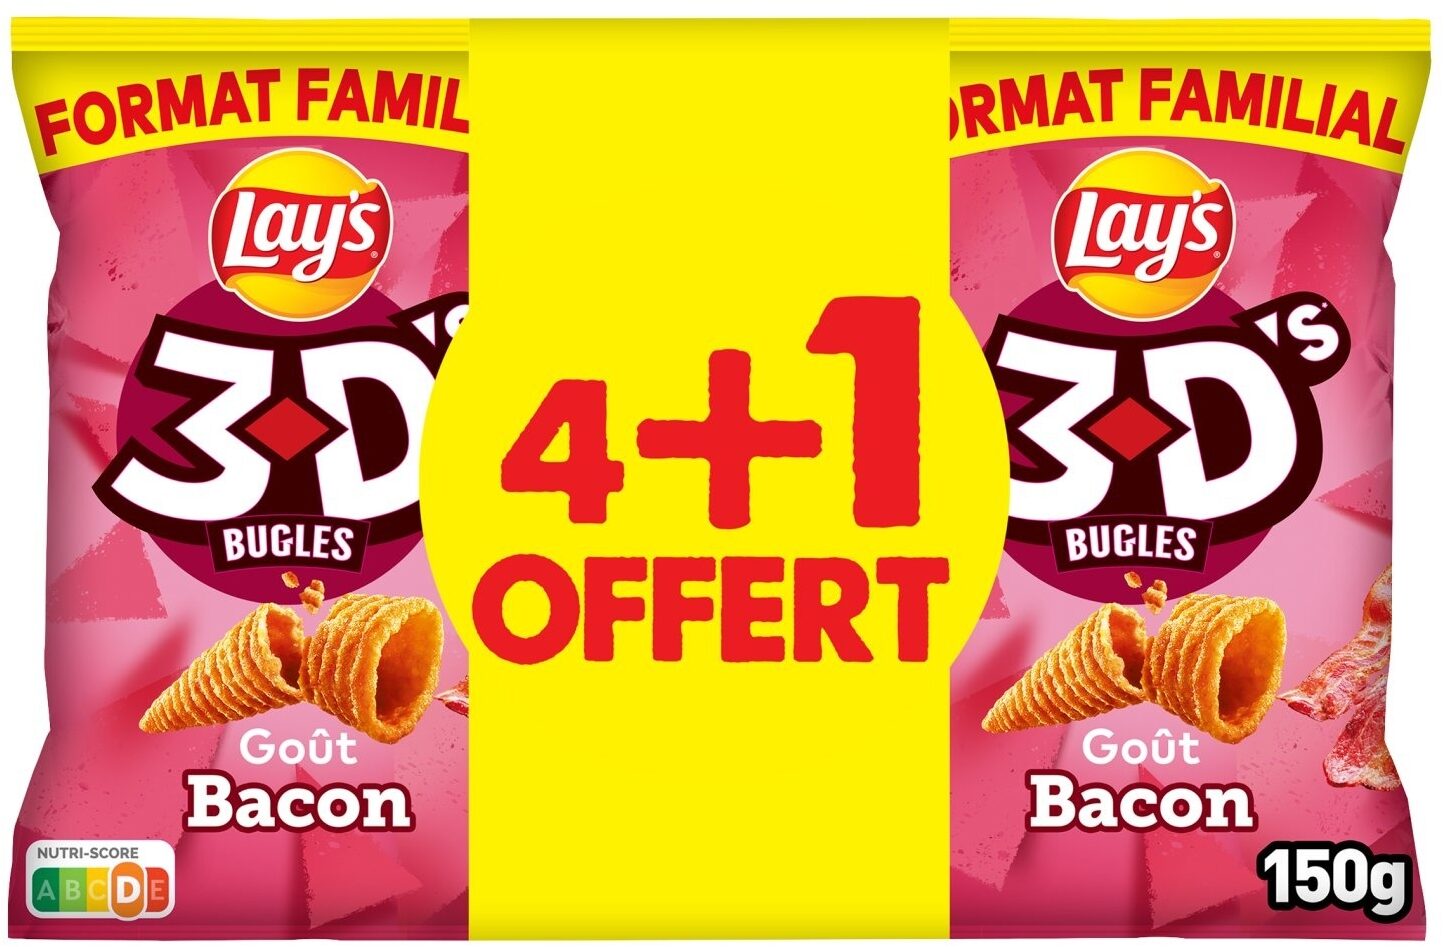 Lay's 3D's Bugles goût bacon lot de 4 x 150 g + 1 offert - Product - fr